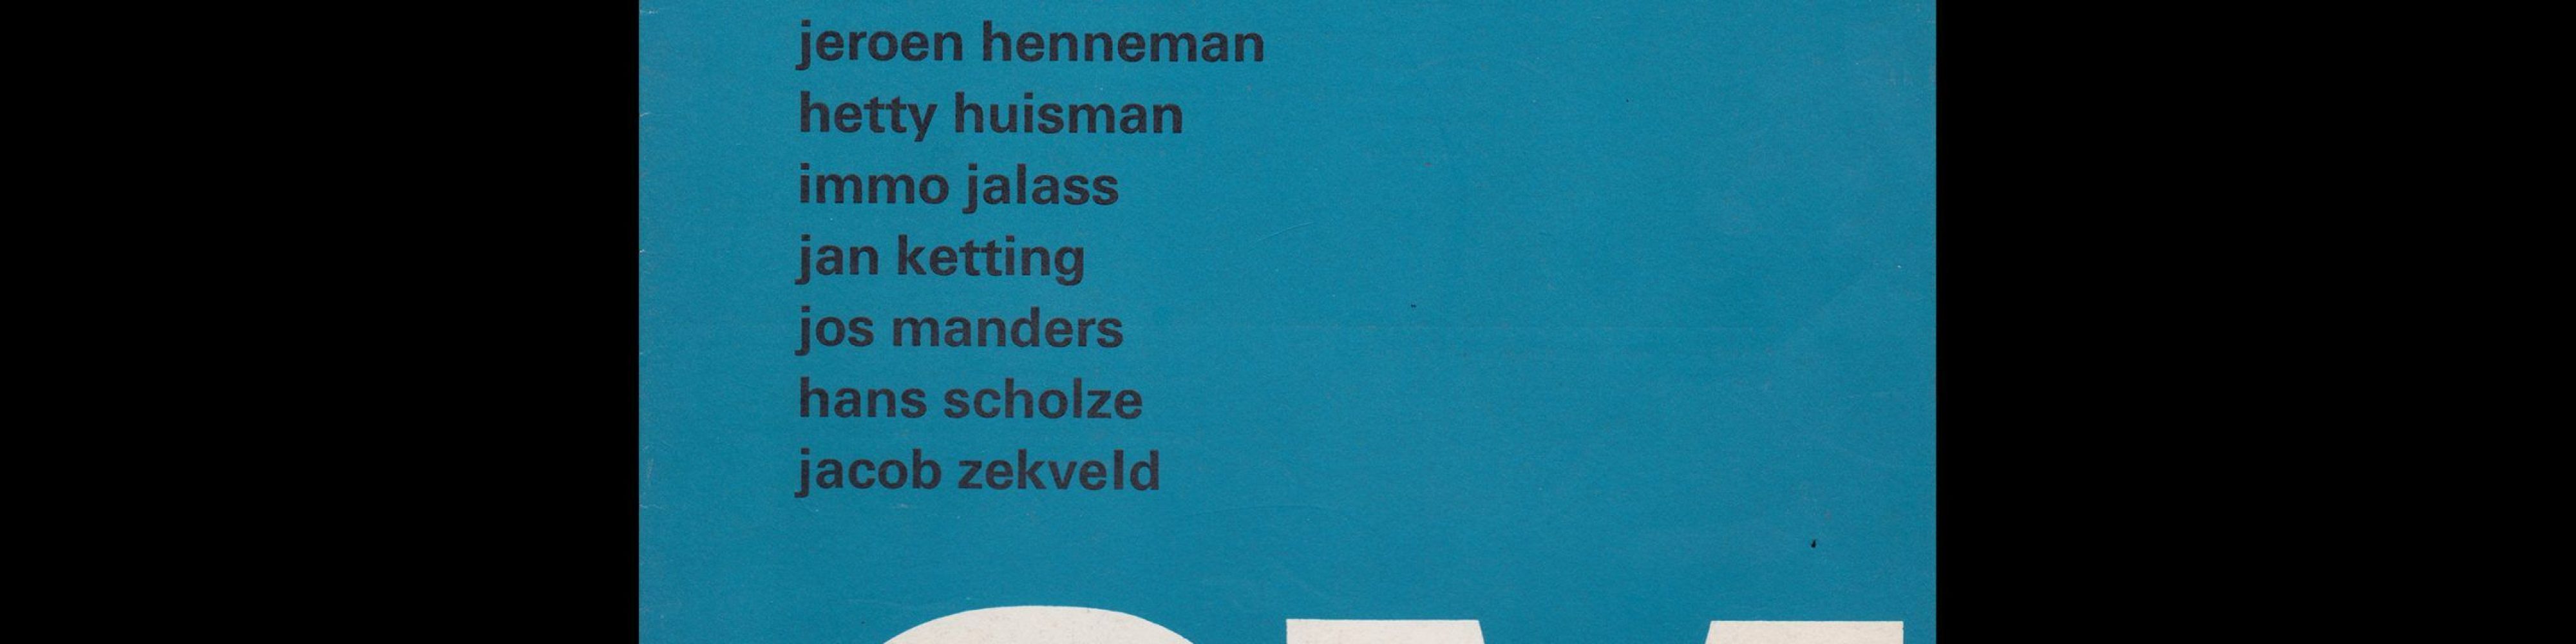 Atelier 6, Stedelijk Museum, Amsterdam, 1969 designed Wim Crouwel